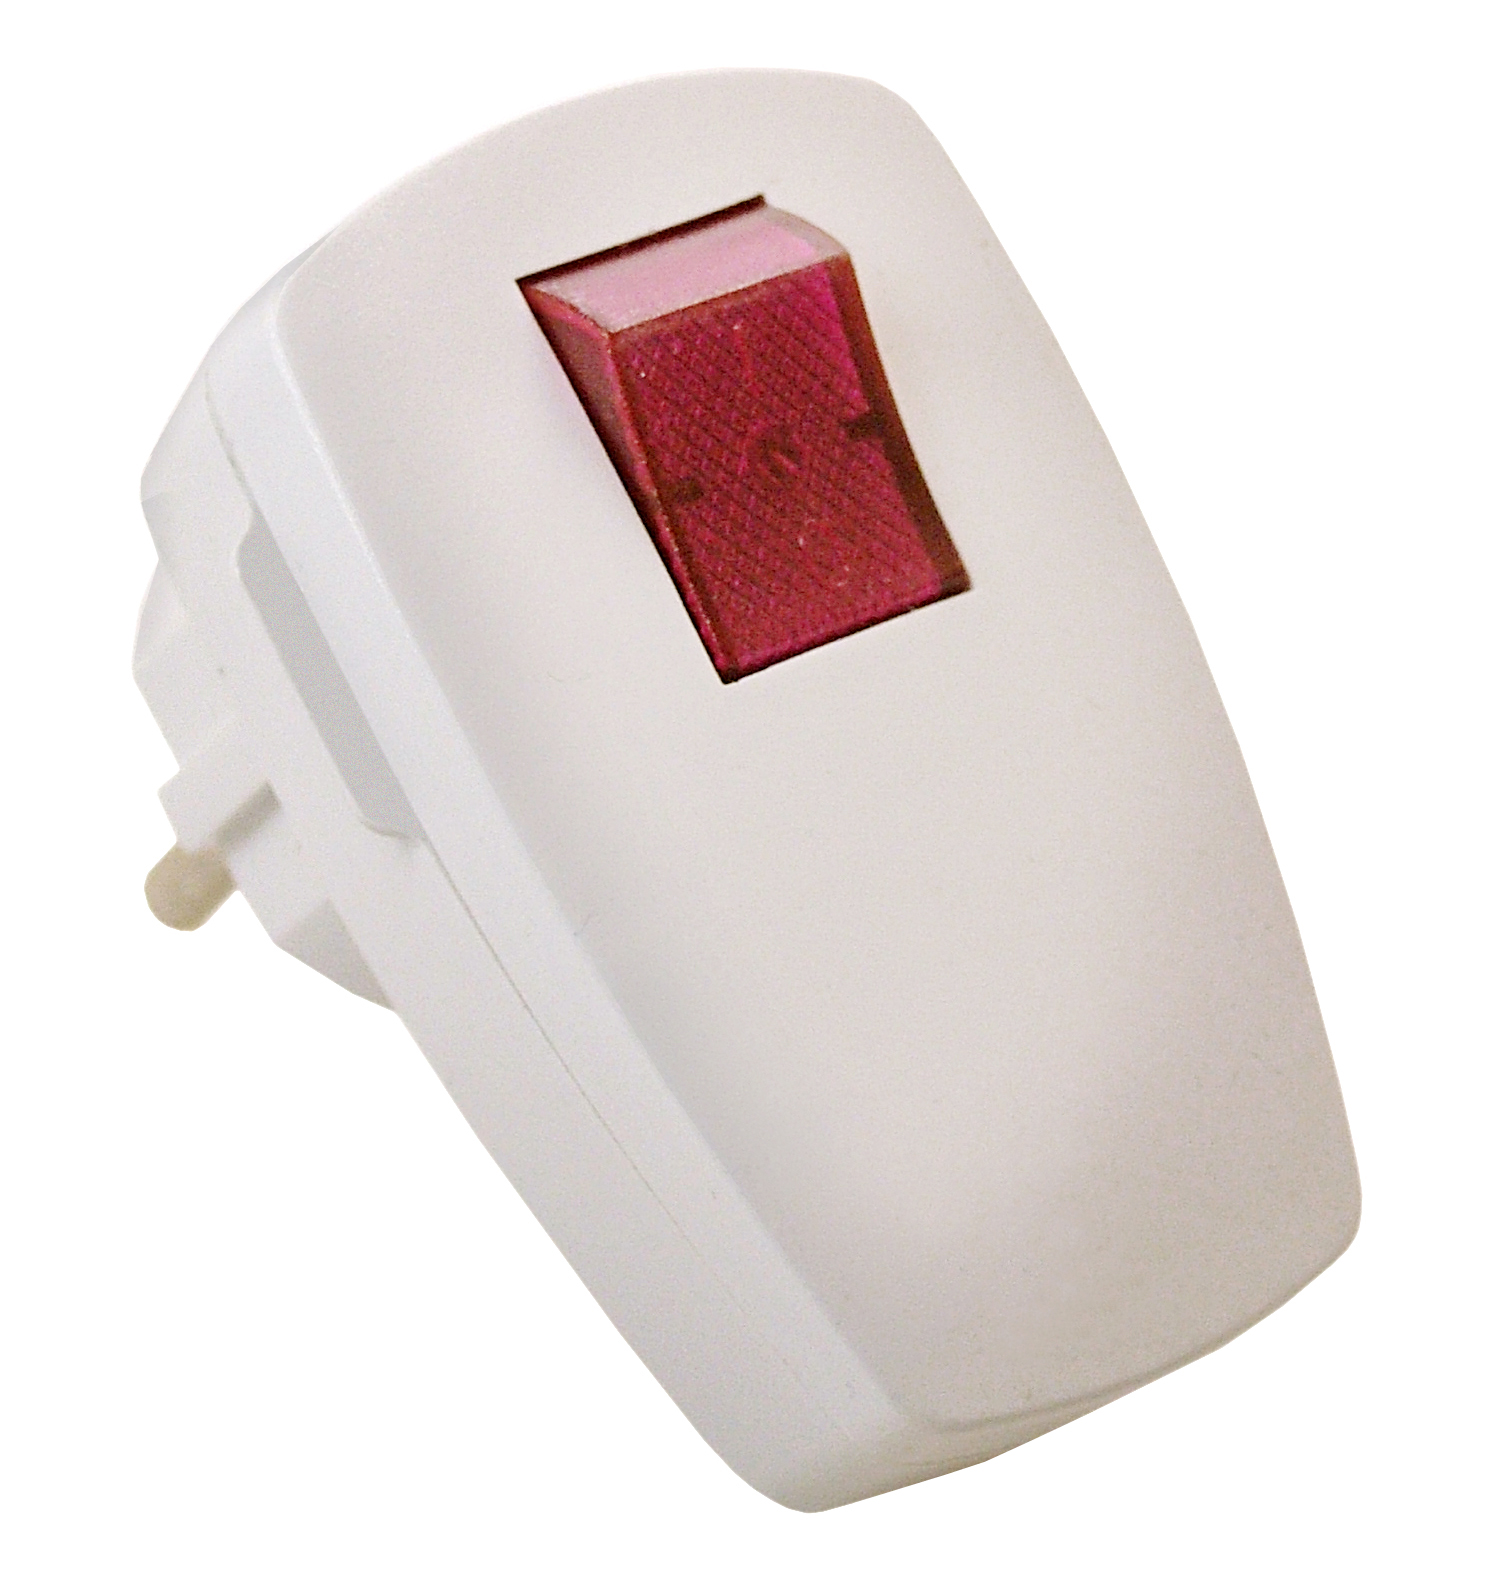 Schutzkontakt-Winkelstecker, Thermoplast, mit beleuchtetem ultraweiß